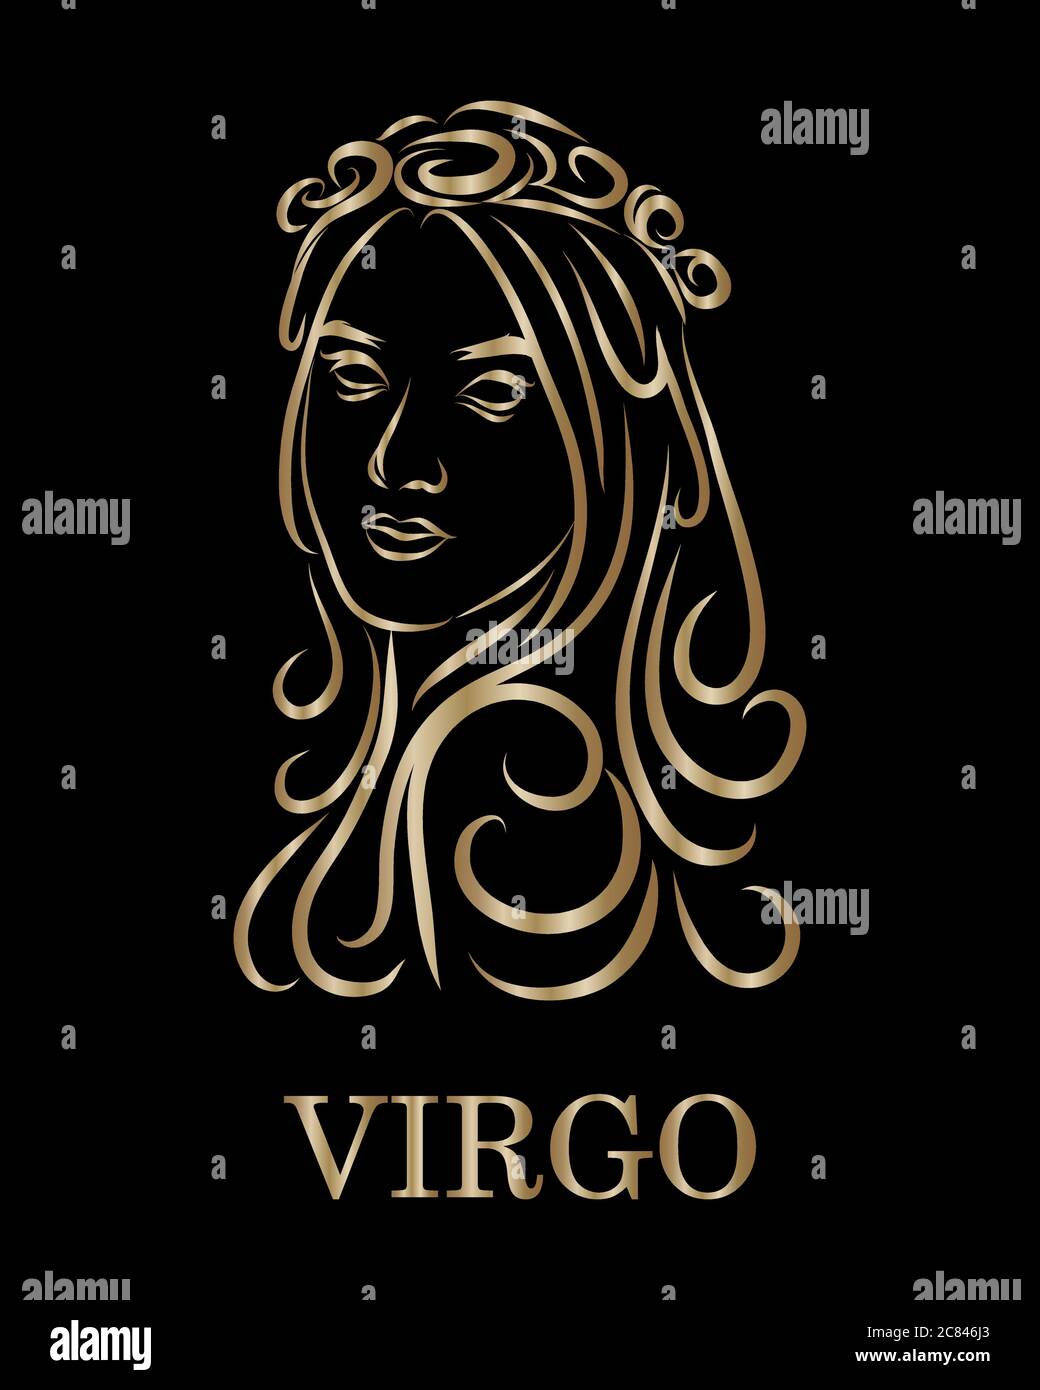 Virgo Horoscopes